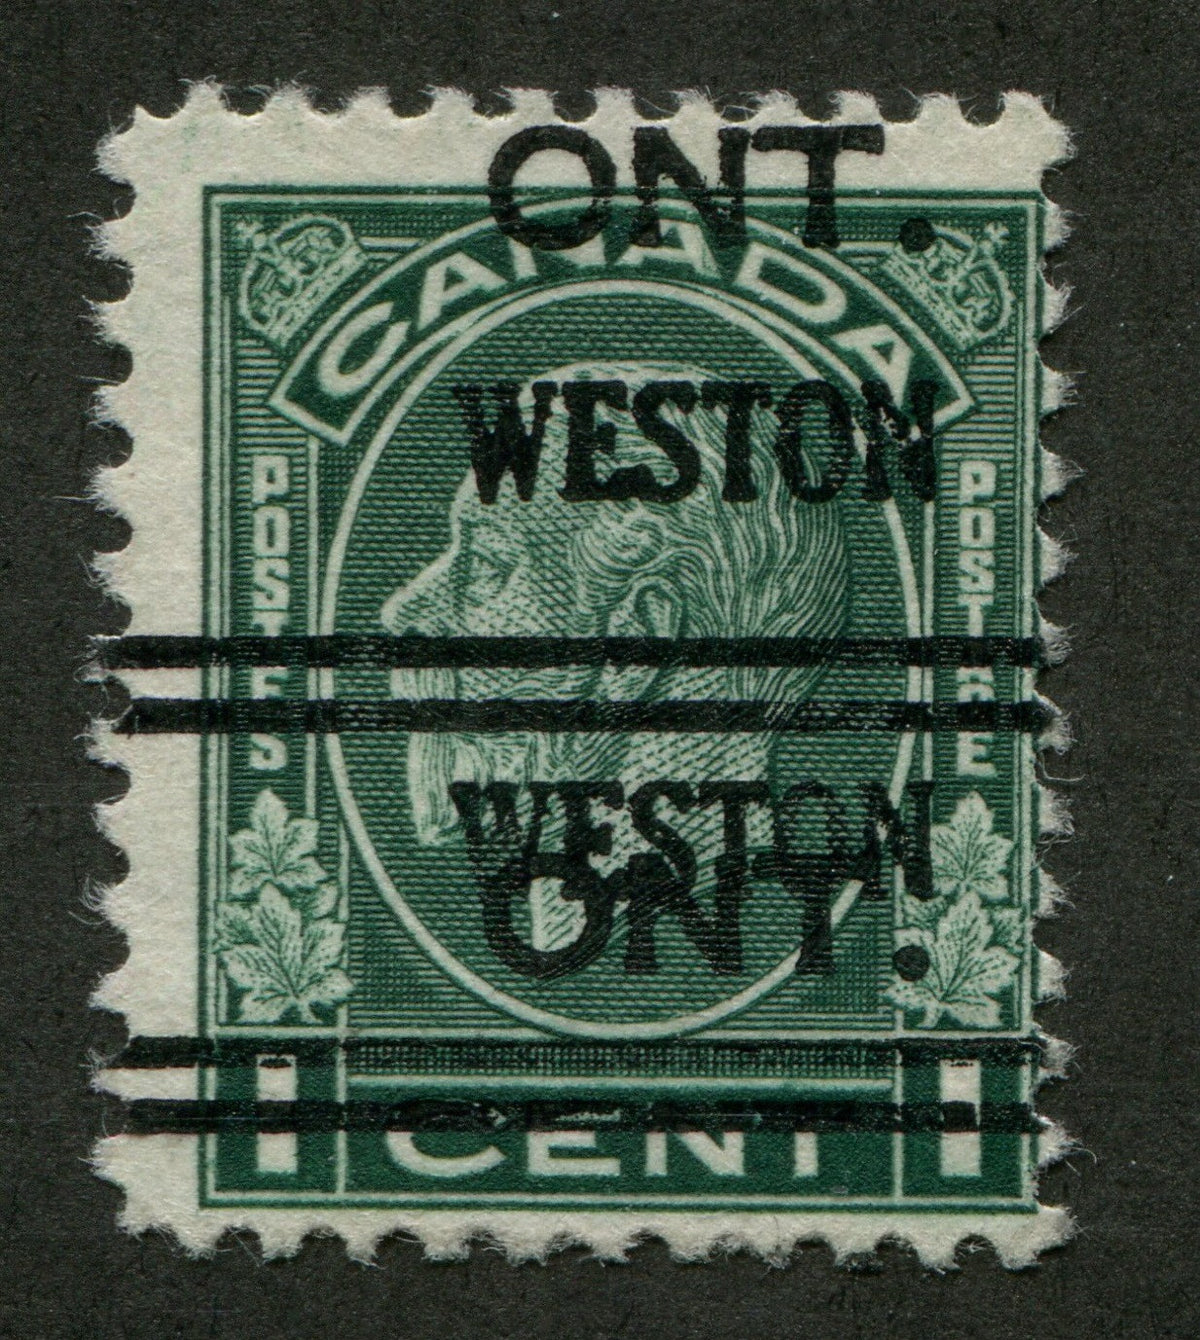 WEST001195 - WESTON 1-195-D